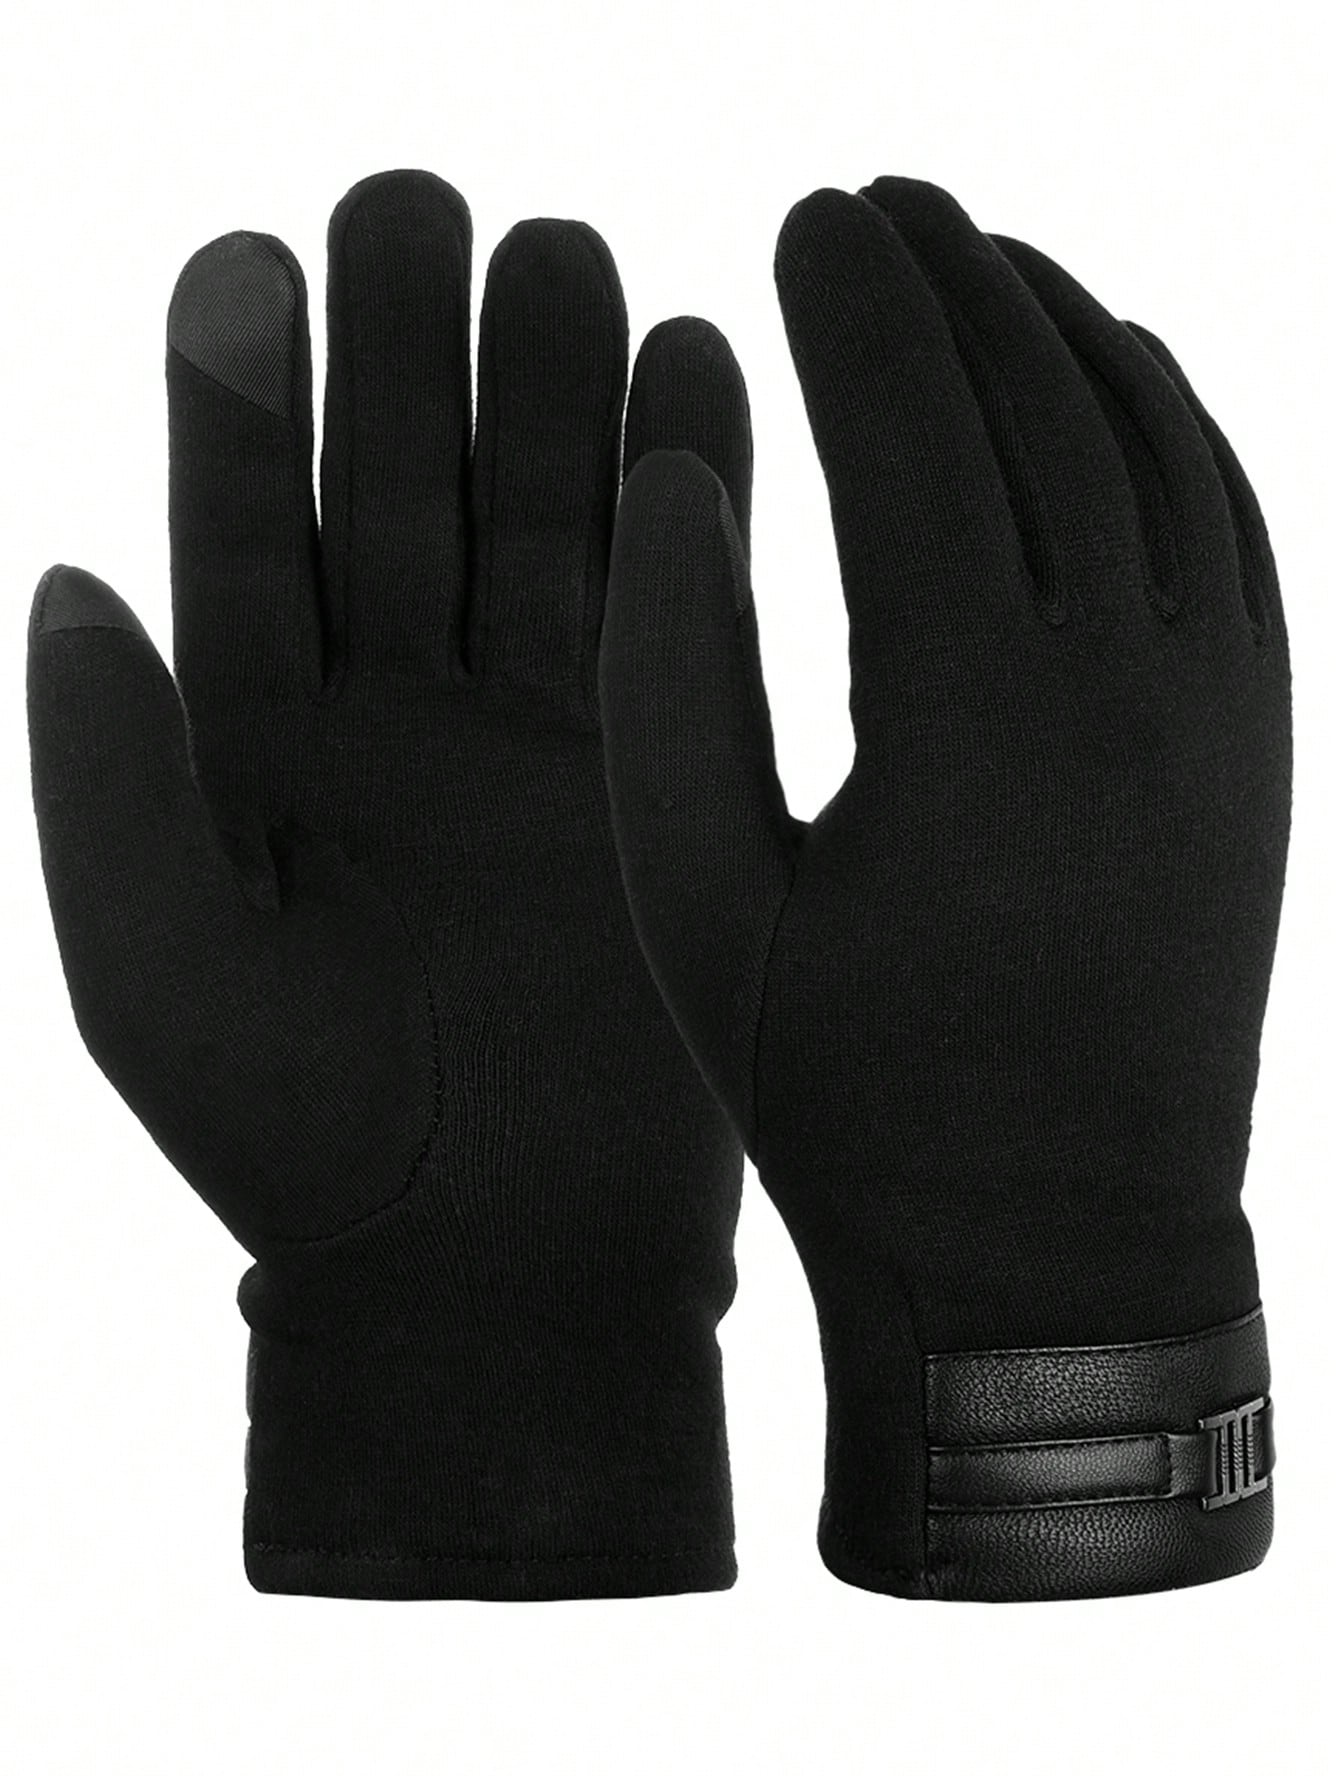 ATARNI Зимние теплые перчатки Перчатки для сенсорного экрана Повседневные перчатки для мужчин, черный водонепроницаемые зимние велосипедные перчатки велосипедные теплые велосипедные перчатки с закрытыми пальцами для сенсорного экрана во